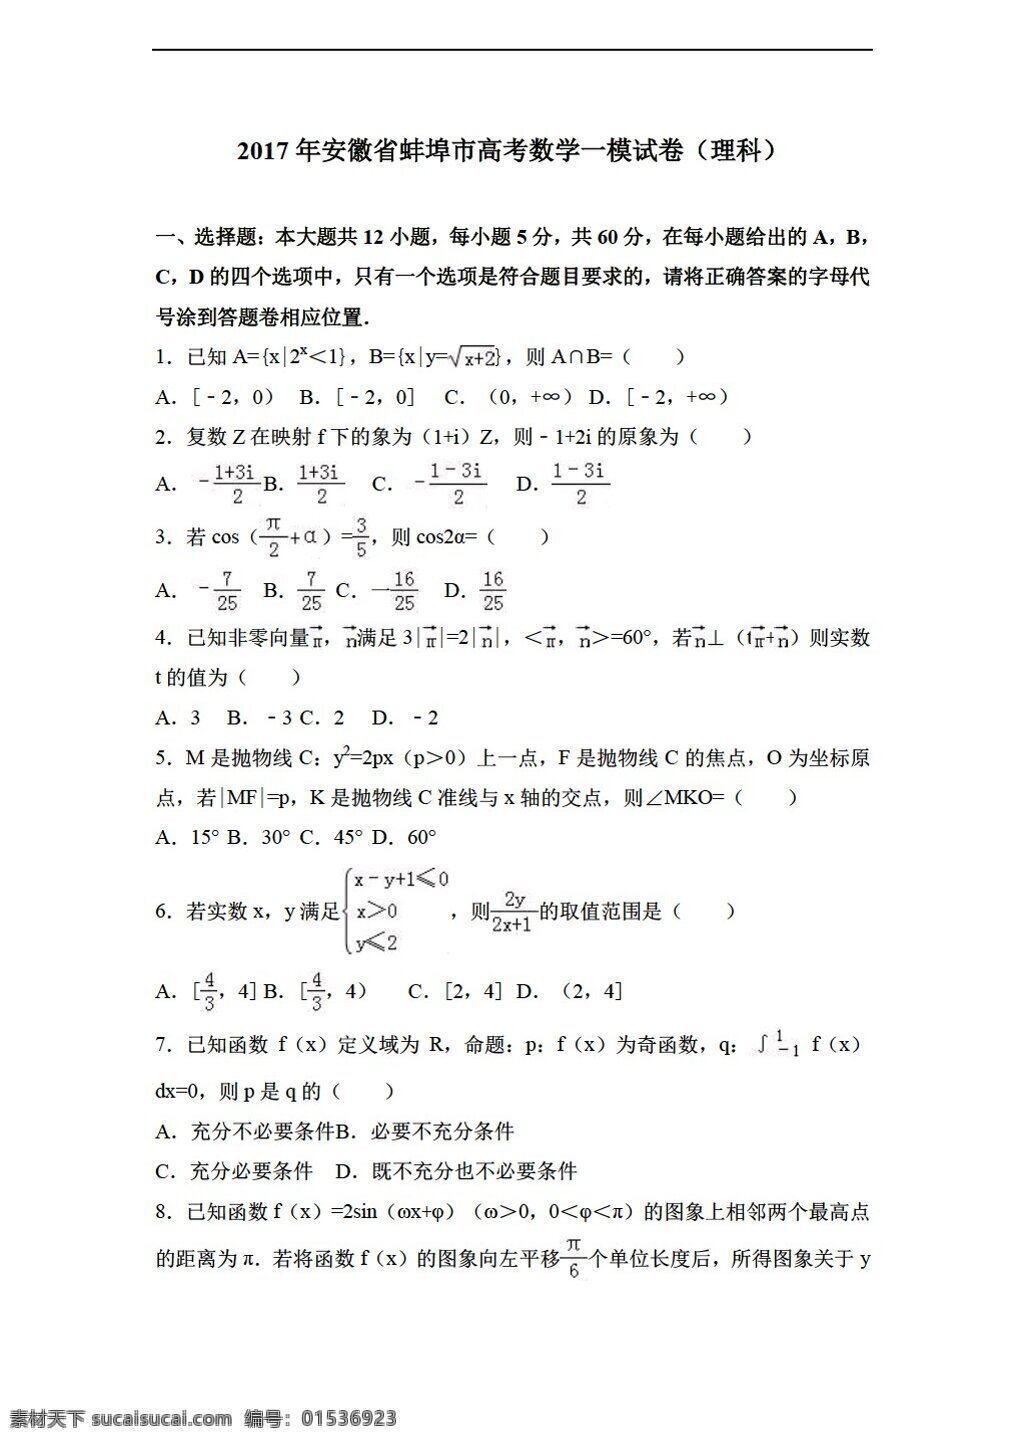 数学 会考 专区 2017 年 安徽省 蚌埠市 高考 模 试卷 理科 解析 版 会考专区 模拟试卷